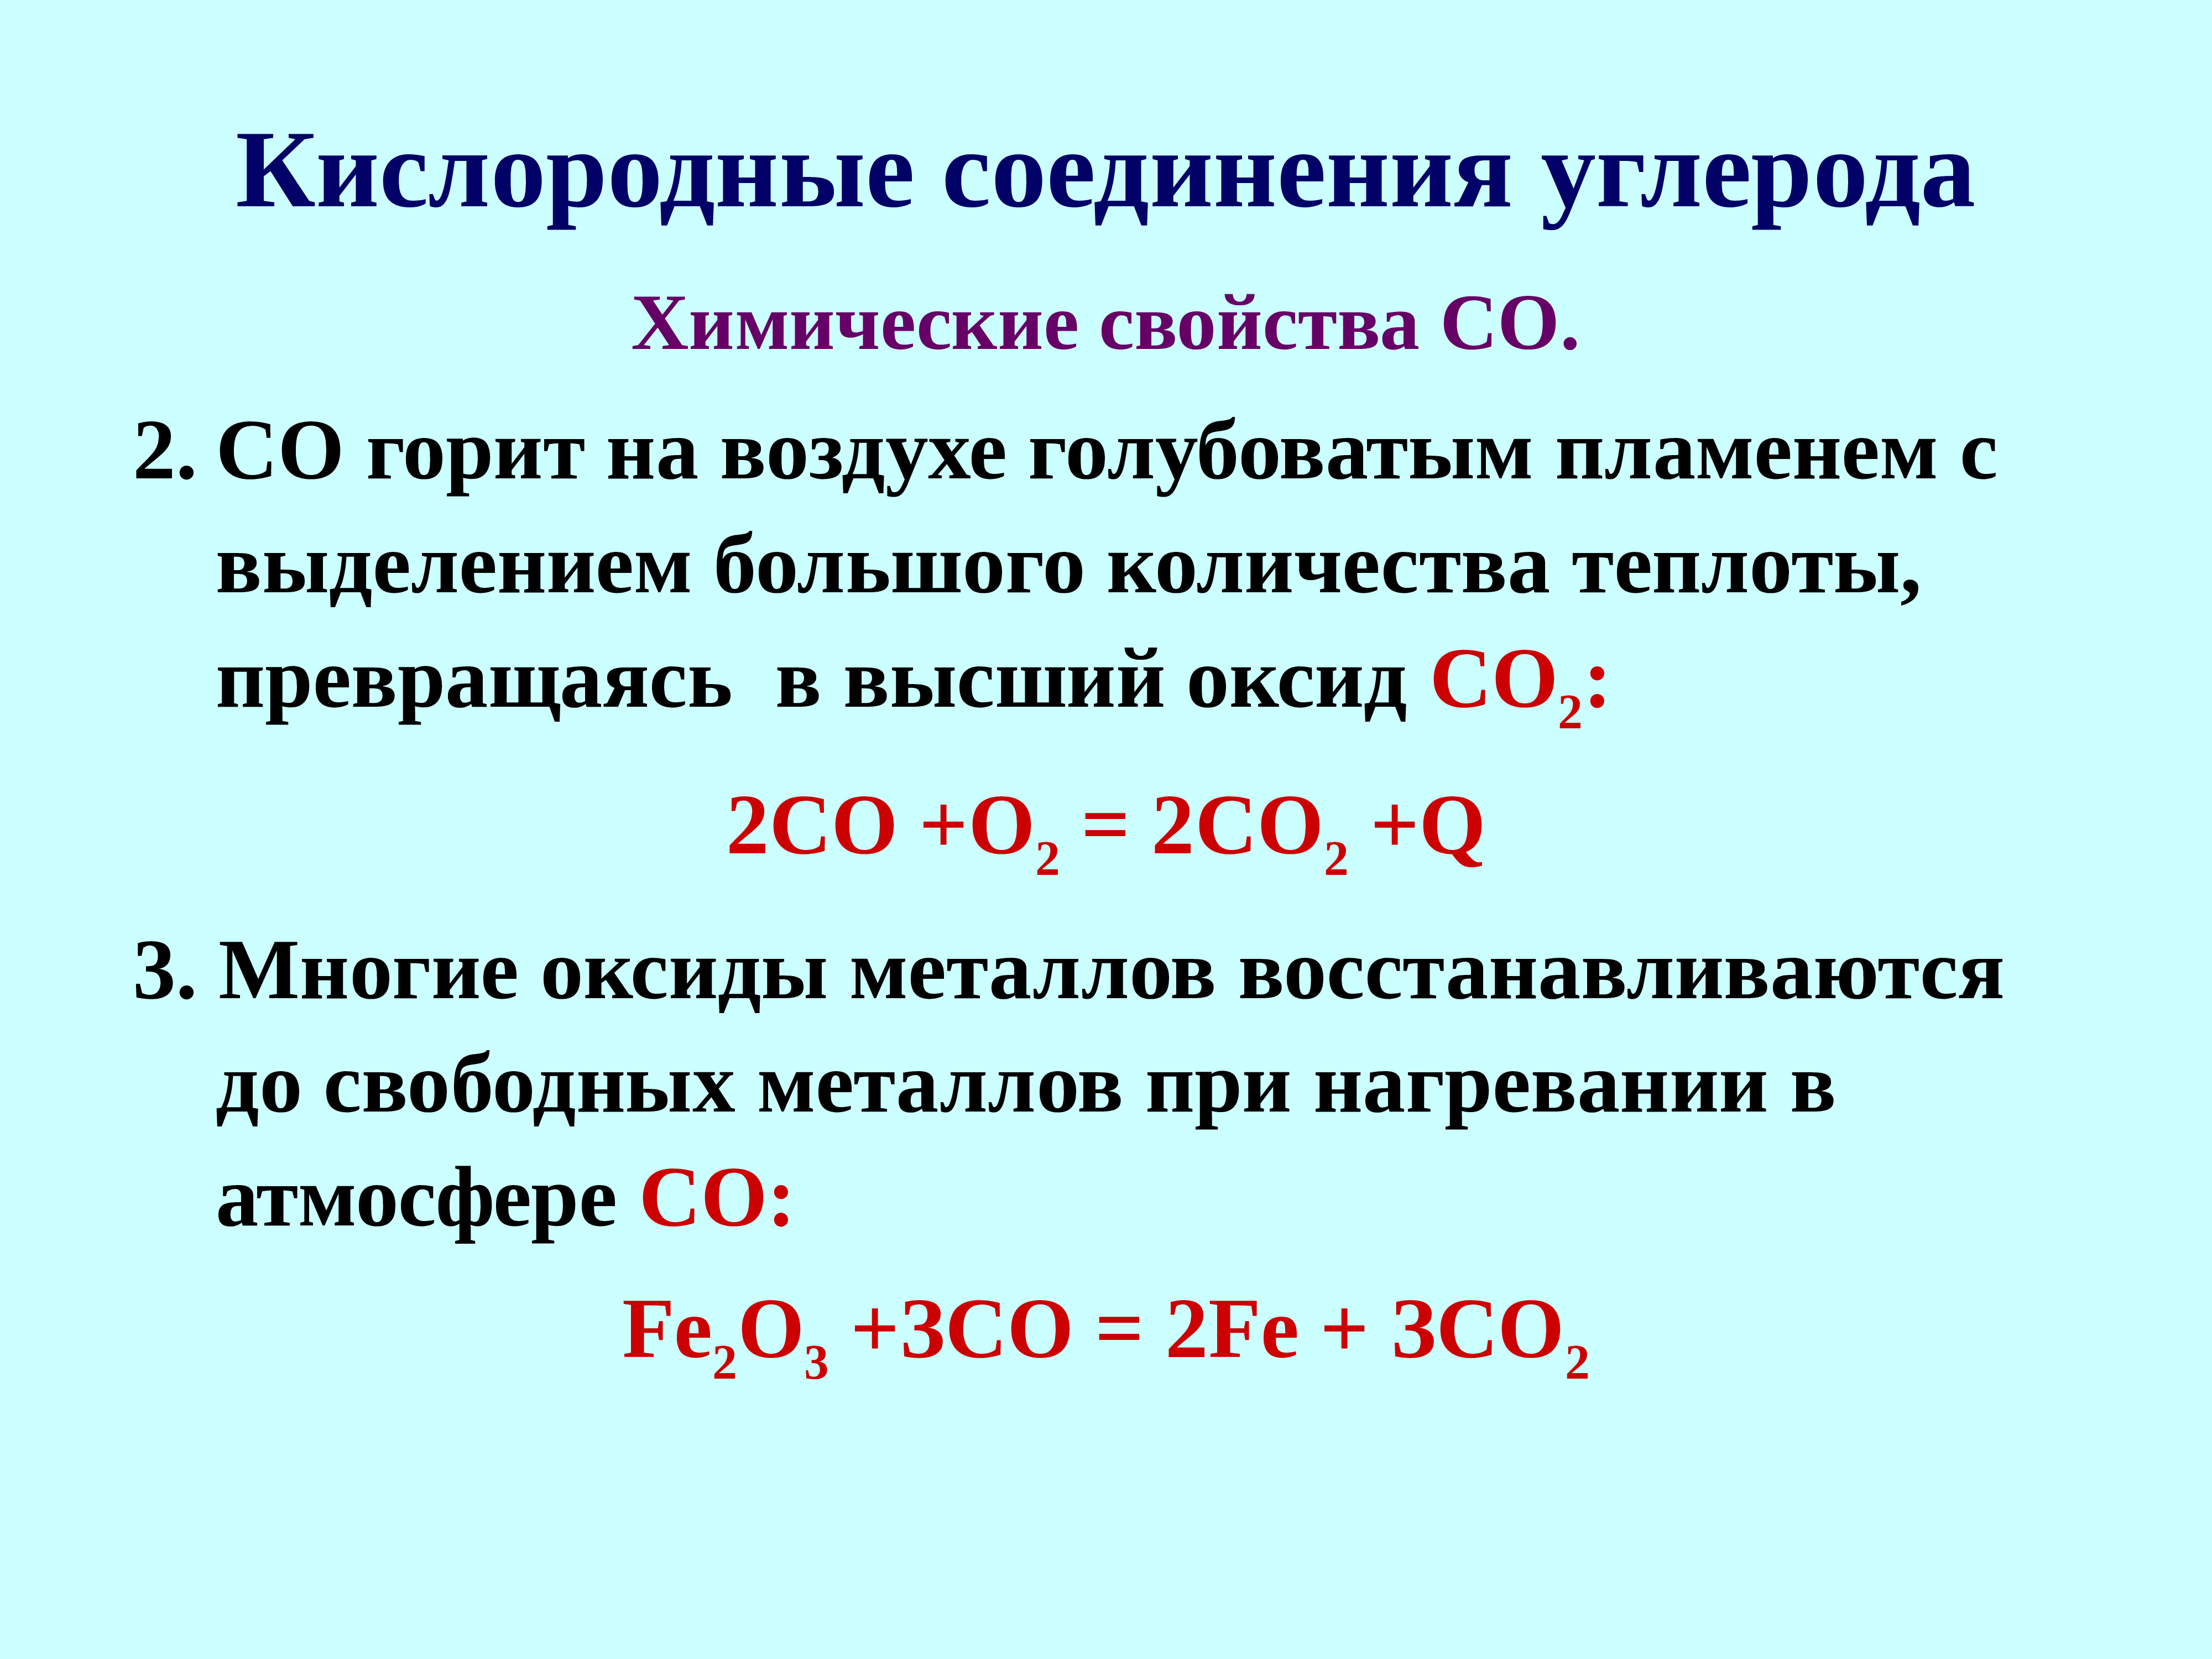 Кислородные соединения углерода 9. Кислородные соединения. Соединения углерода. Кислородные соединения углерода таблица. Кислородные соединения углерода конспект.